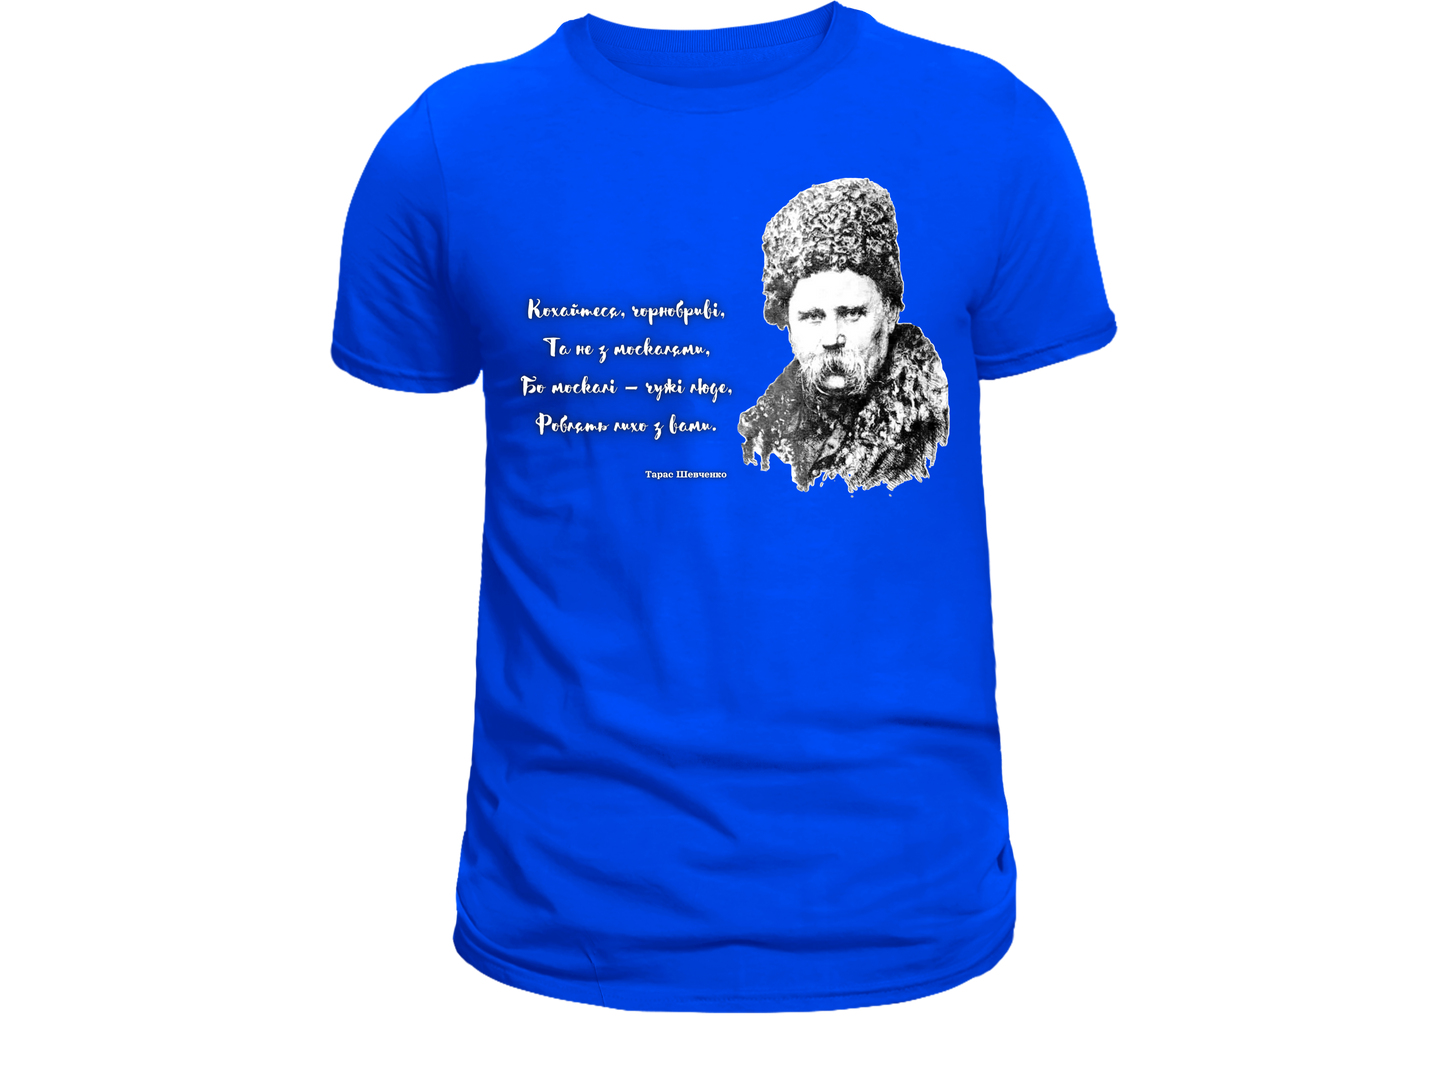 PRE-ORDER Youth T-shirt with the print Taras Shevchenko portrait and quote (Kohaytesya chornobryvi ta ne z moskalyamy)